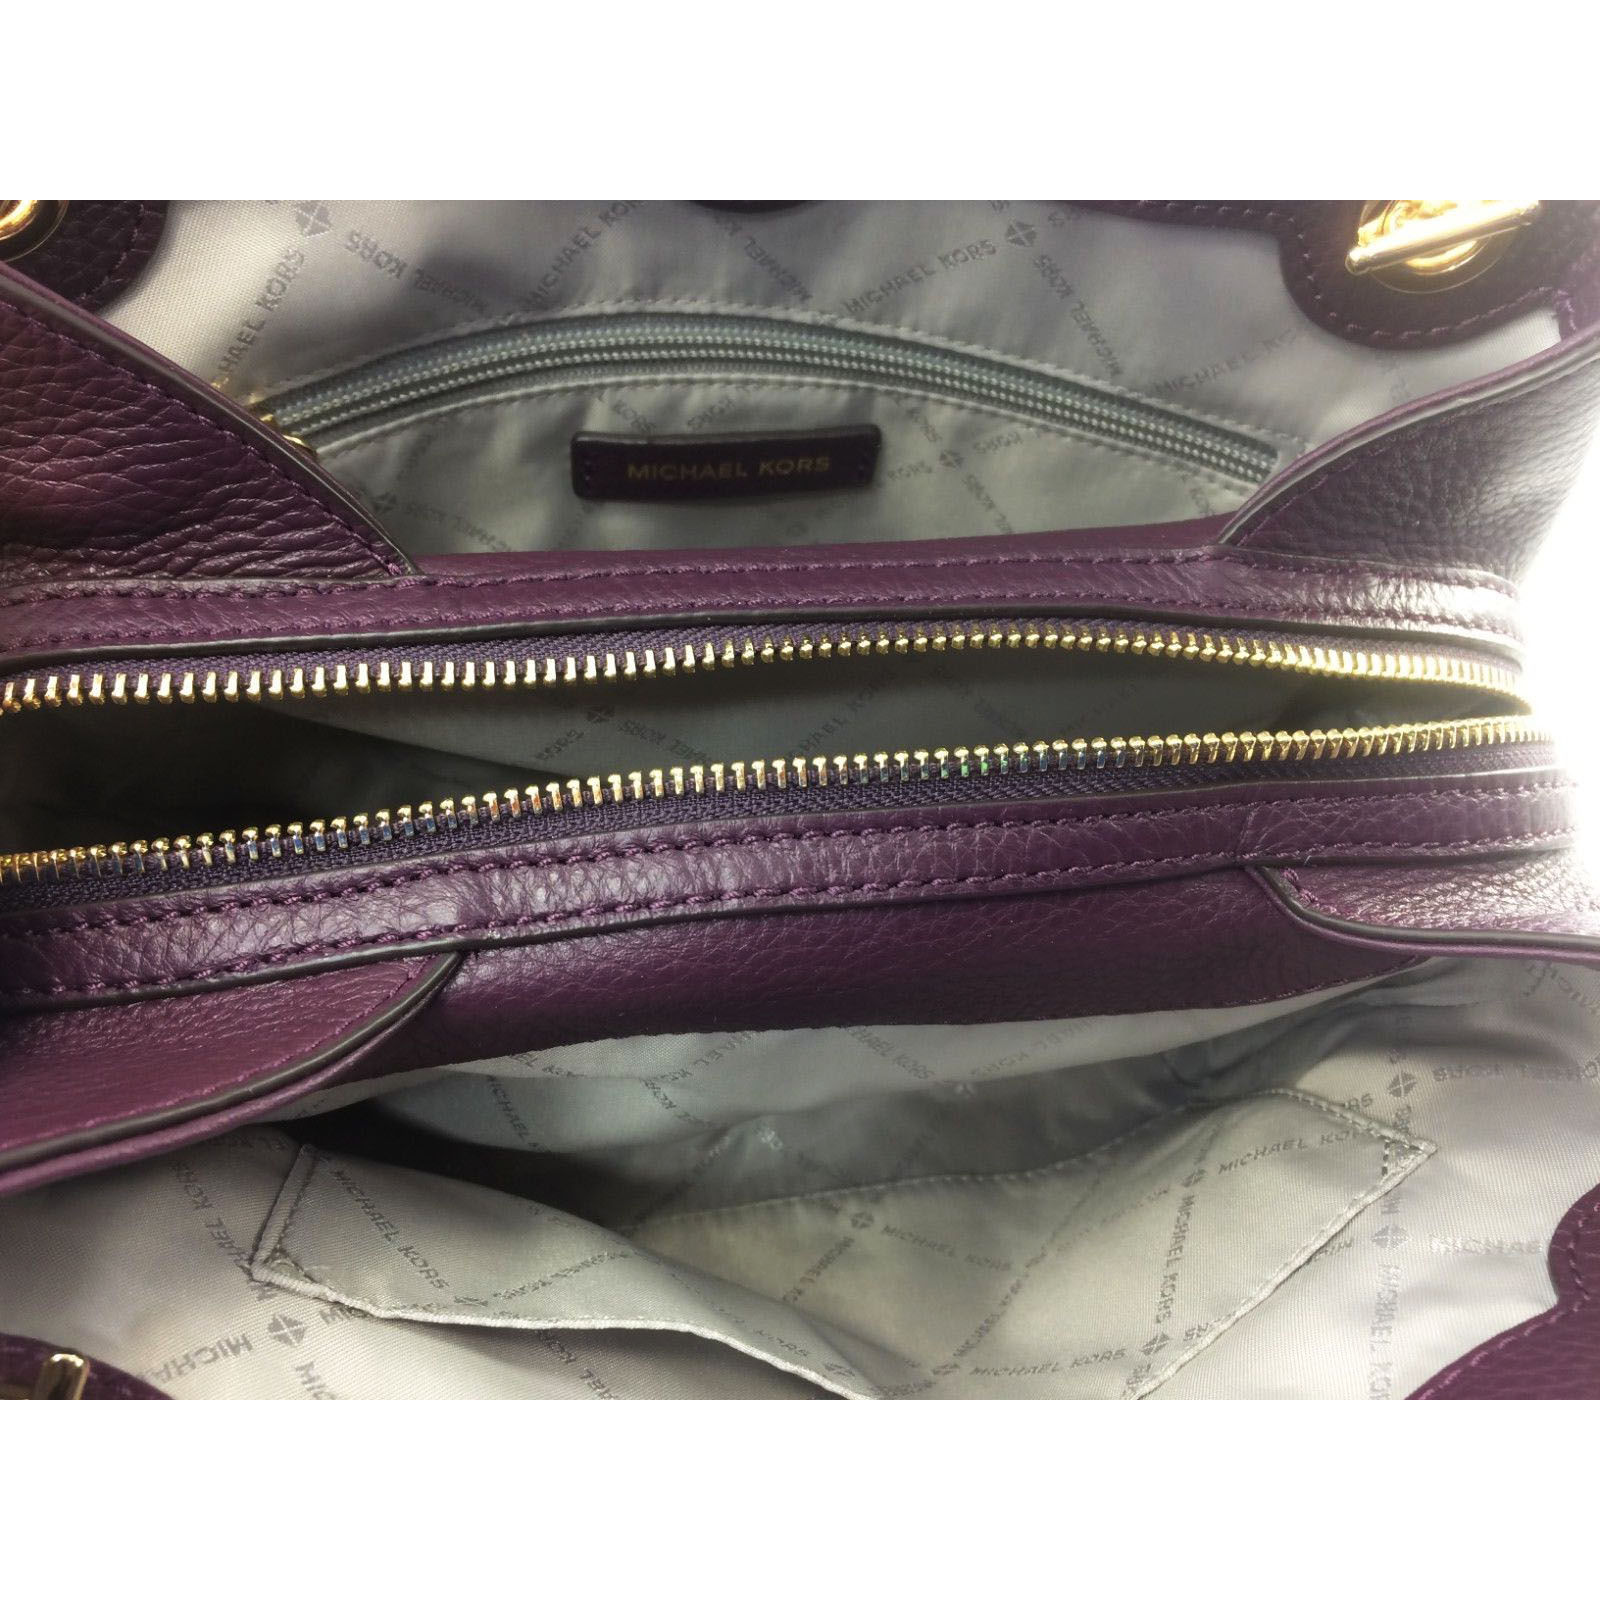 Michael Kors - Jet Set Chain Leather Shoulder Bag Violet